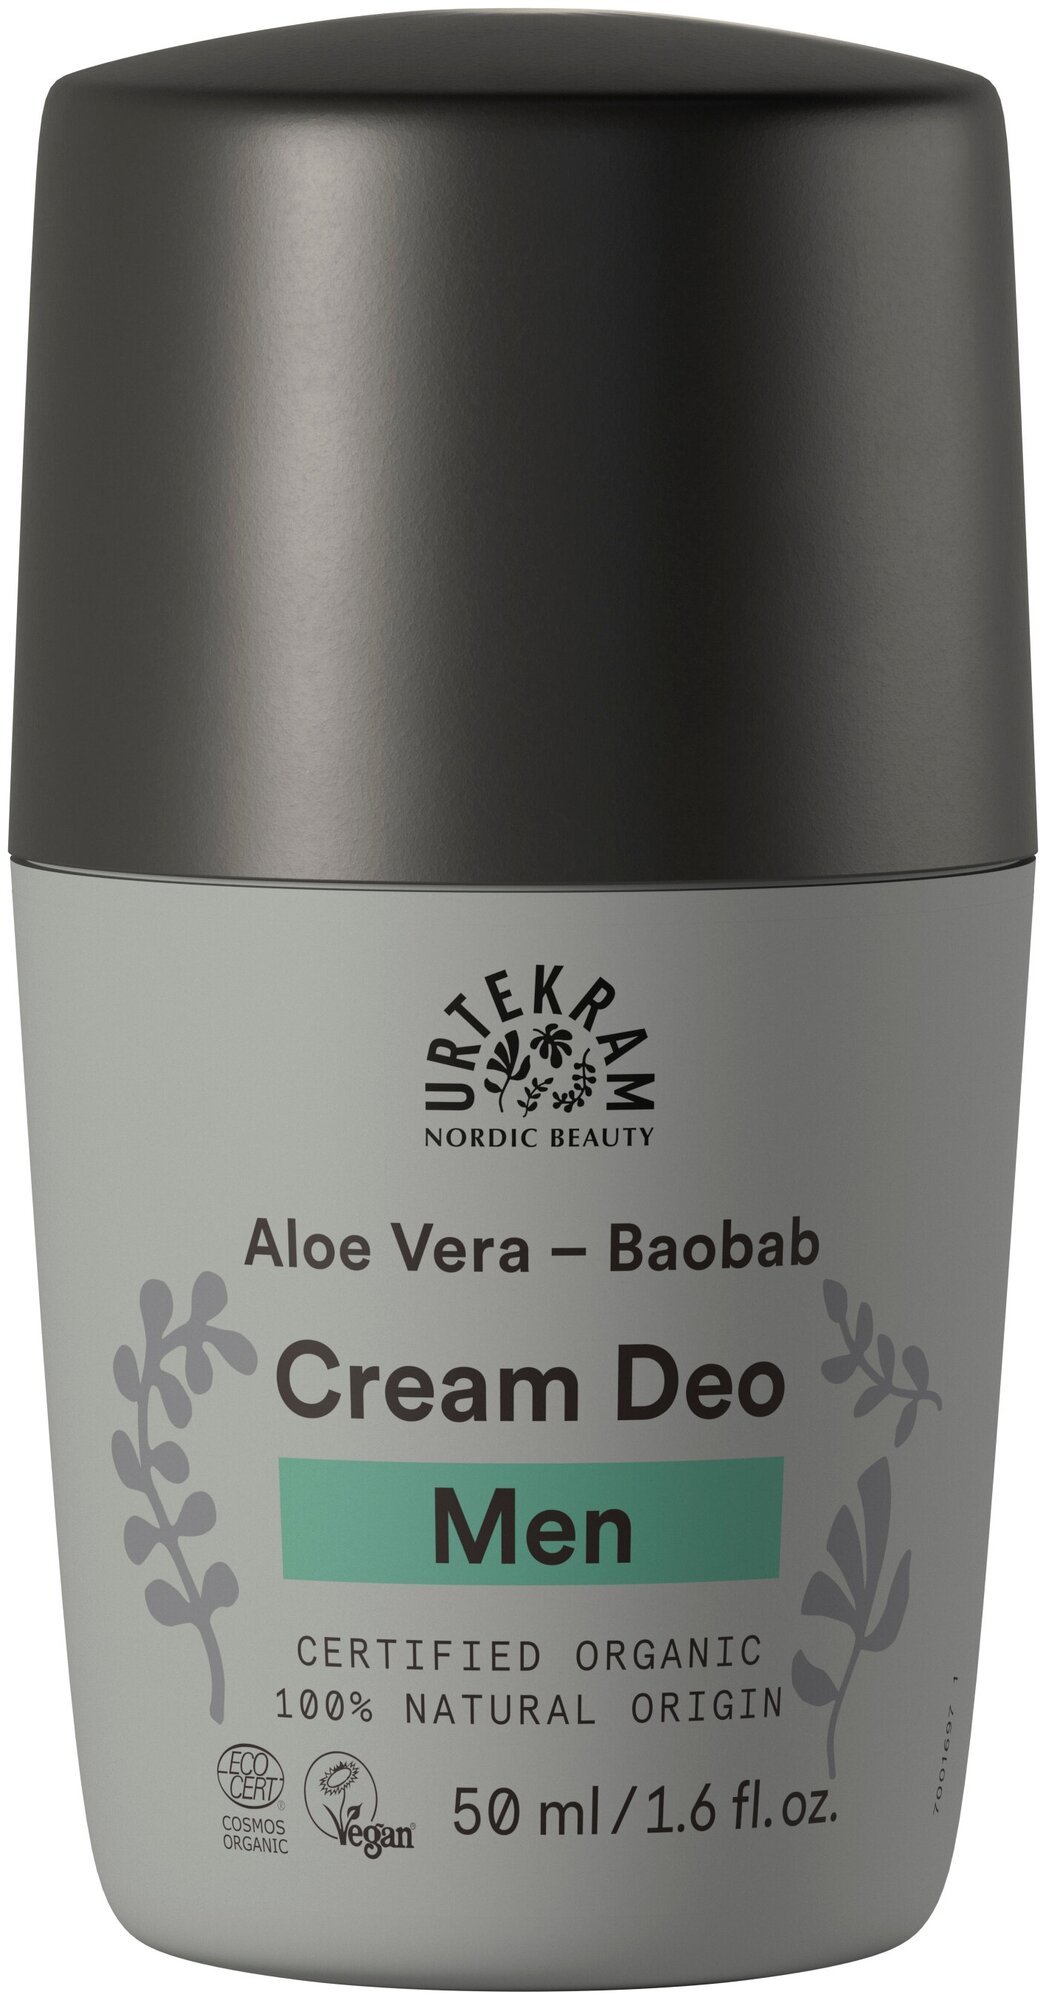 Мужской крем дезодорант "Алоэ Вера-Баобаб", натуральный, органический, Urtekram, 50 мл